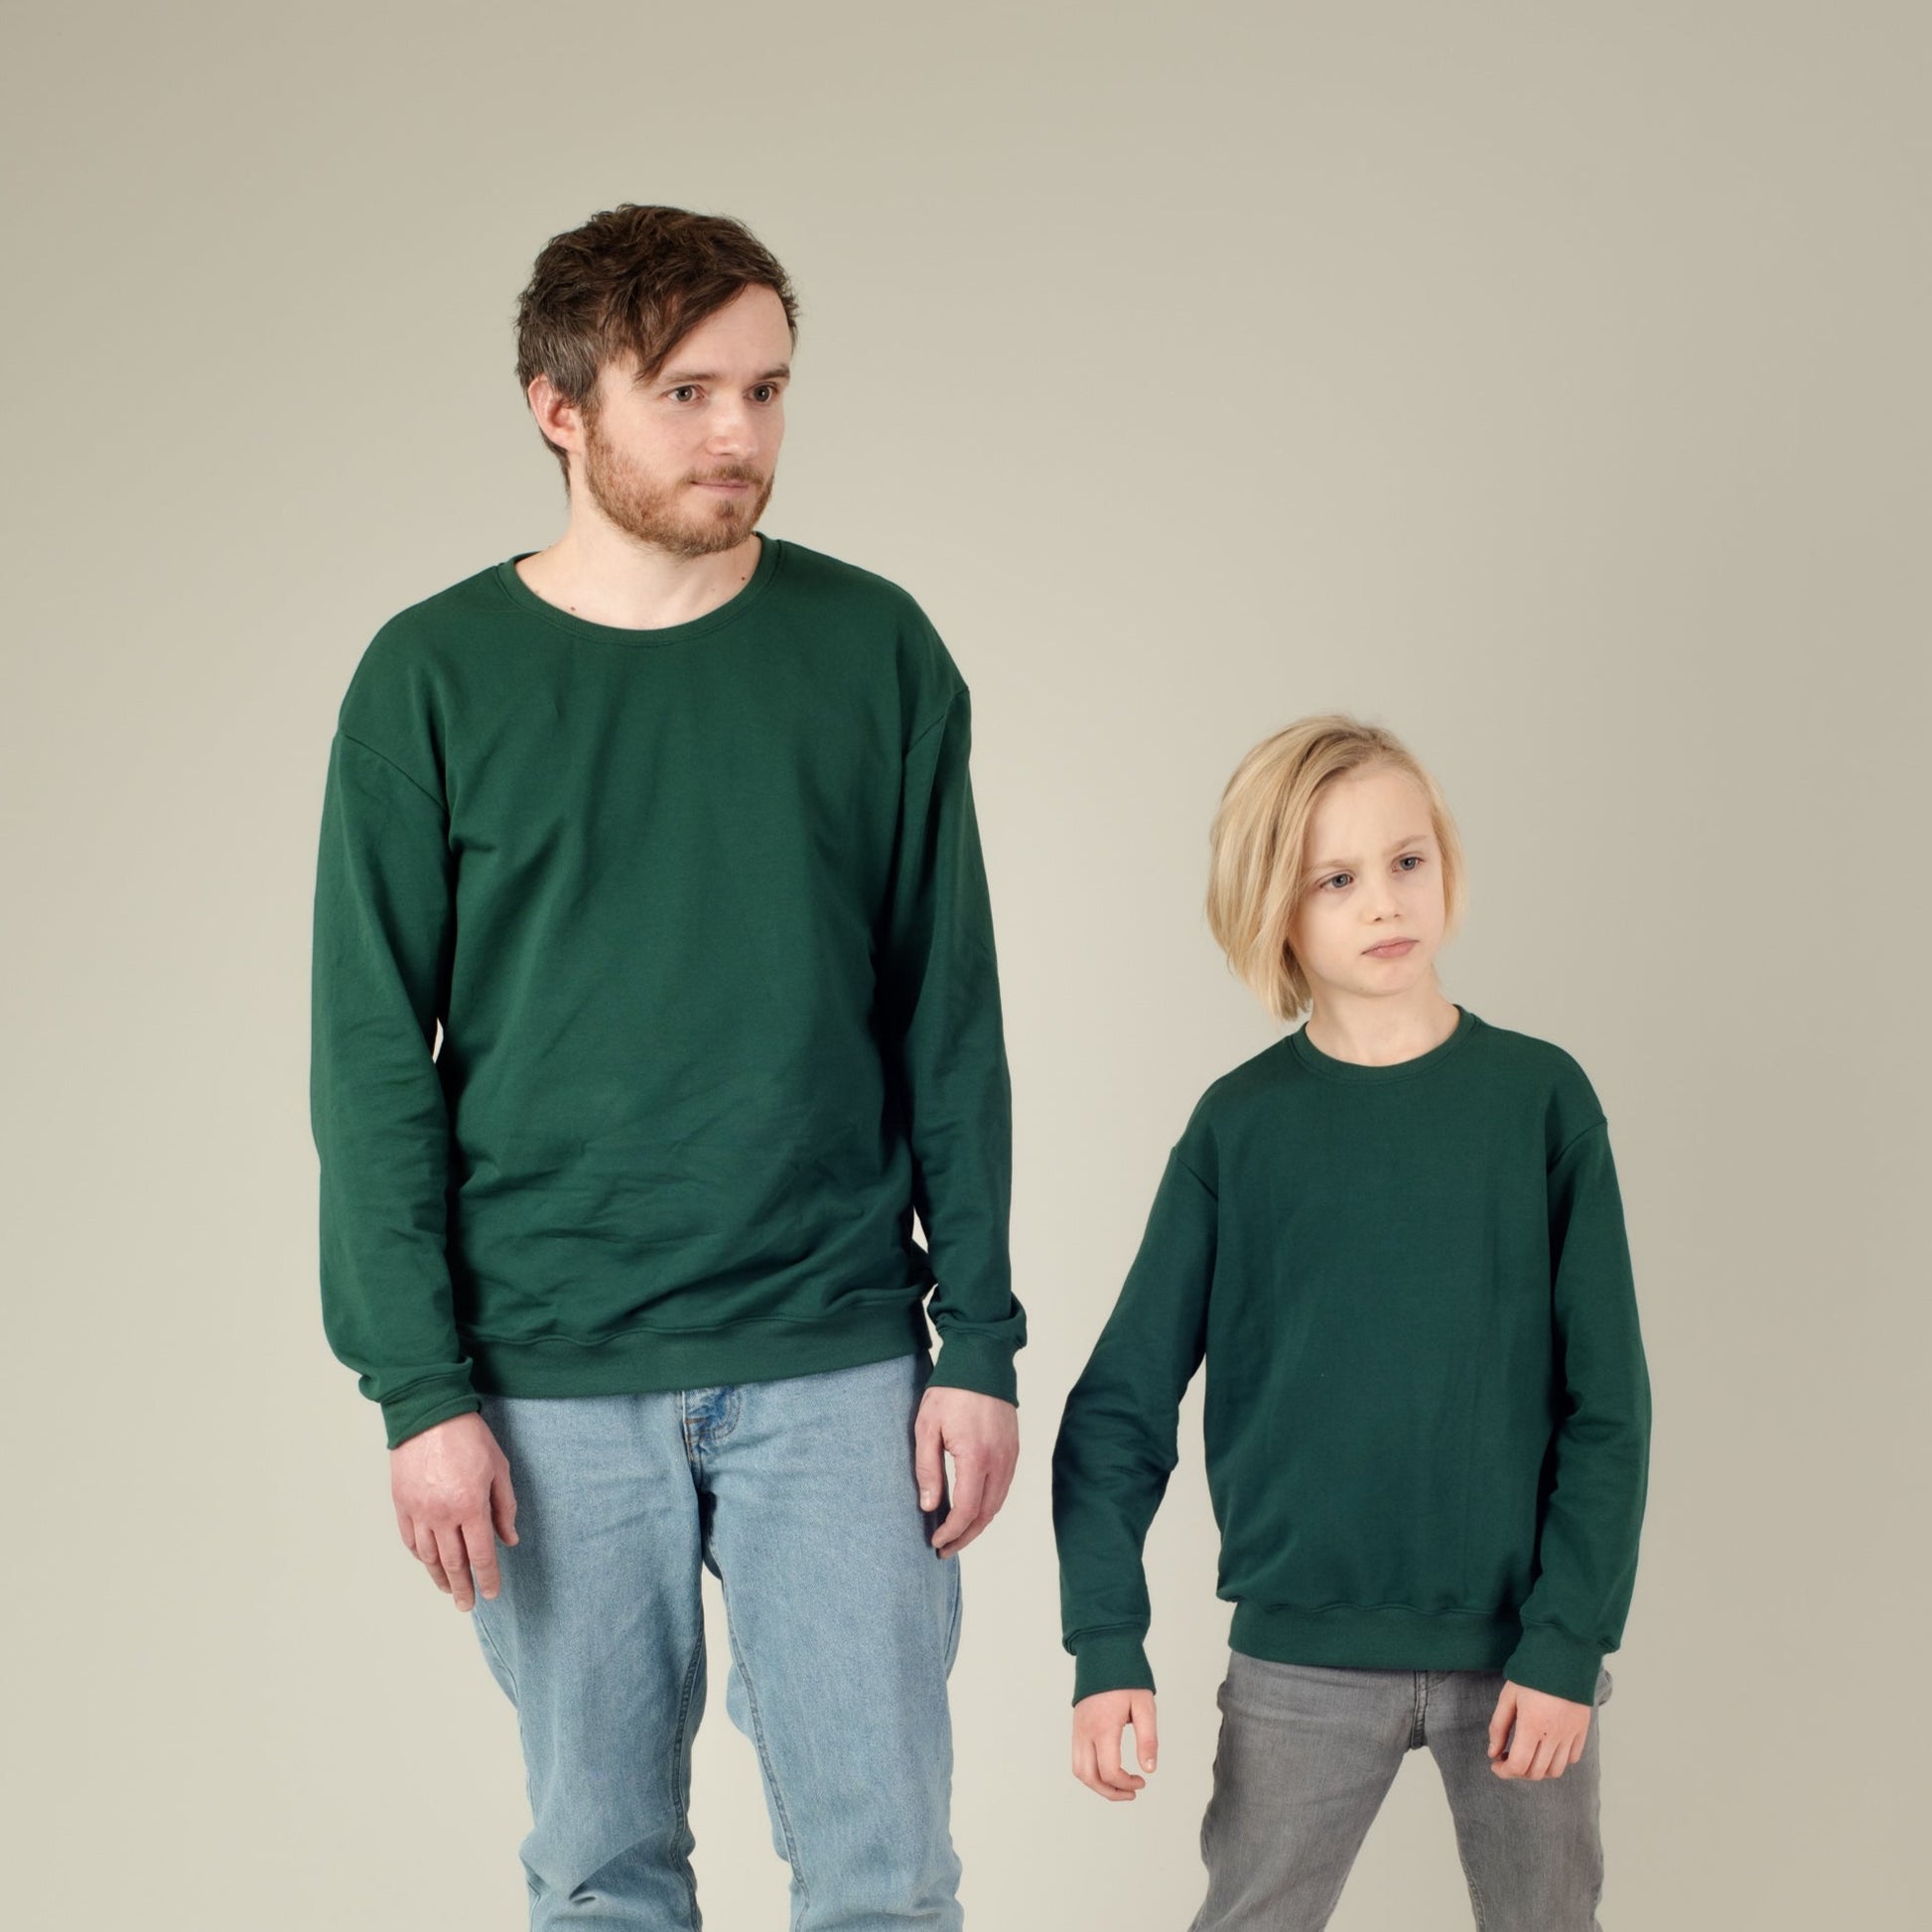 Pulli Baumwoll-Sweater Grün, Junge und Mann, Vater und Sohn, Partnerlook, Vorderansicht, Urheber: Mini & Eve